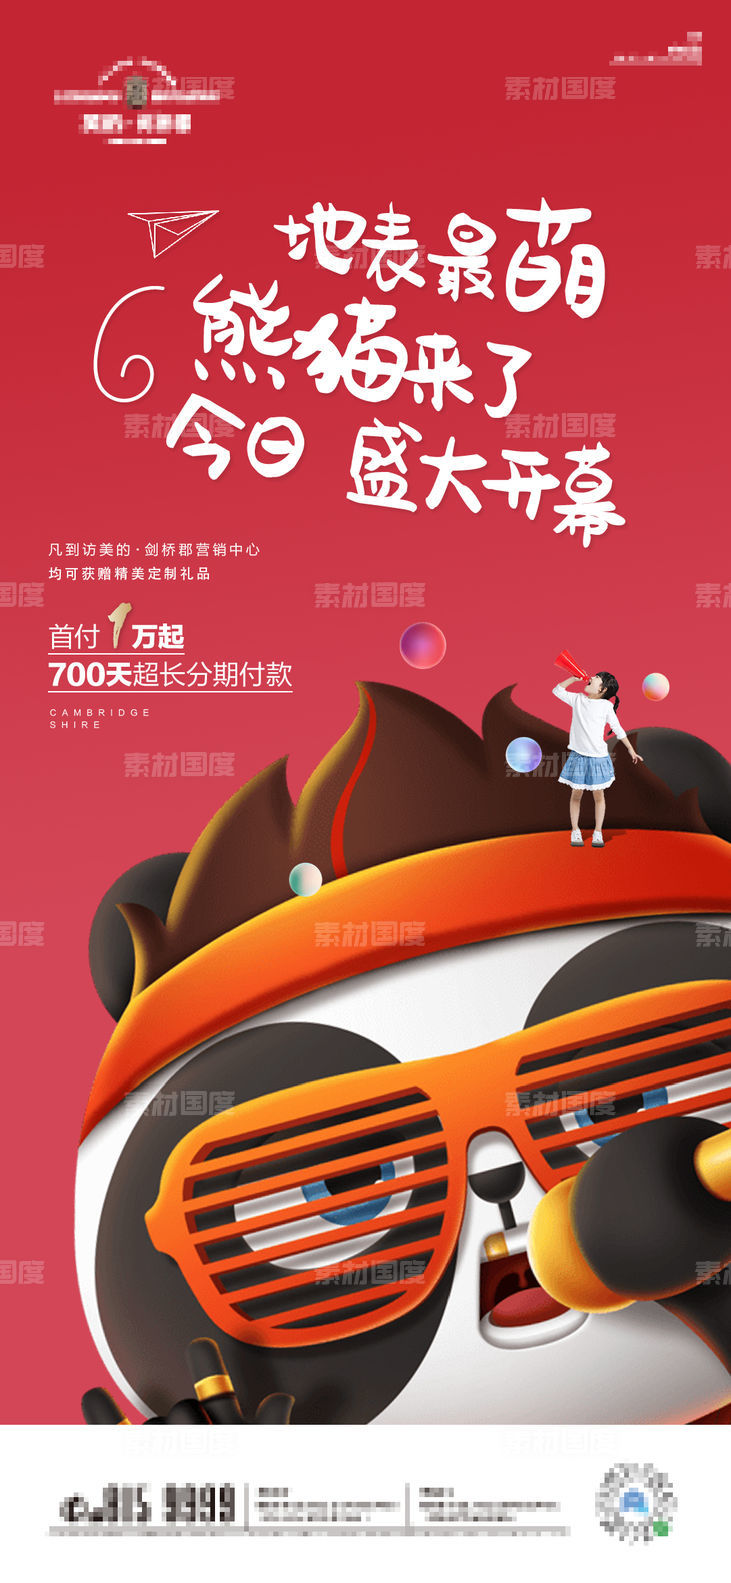 熊猫 刷屏 地产 微信 H5 手绘 插画 海报